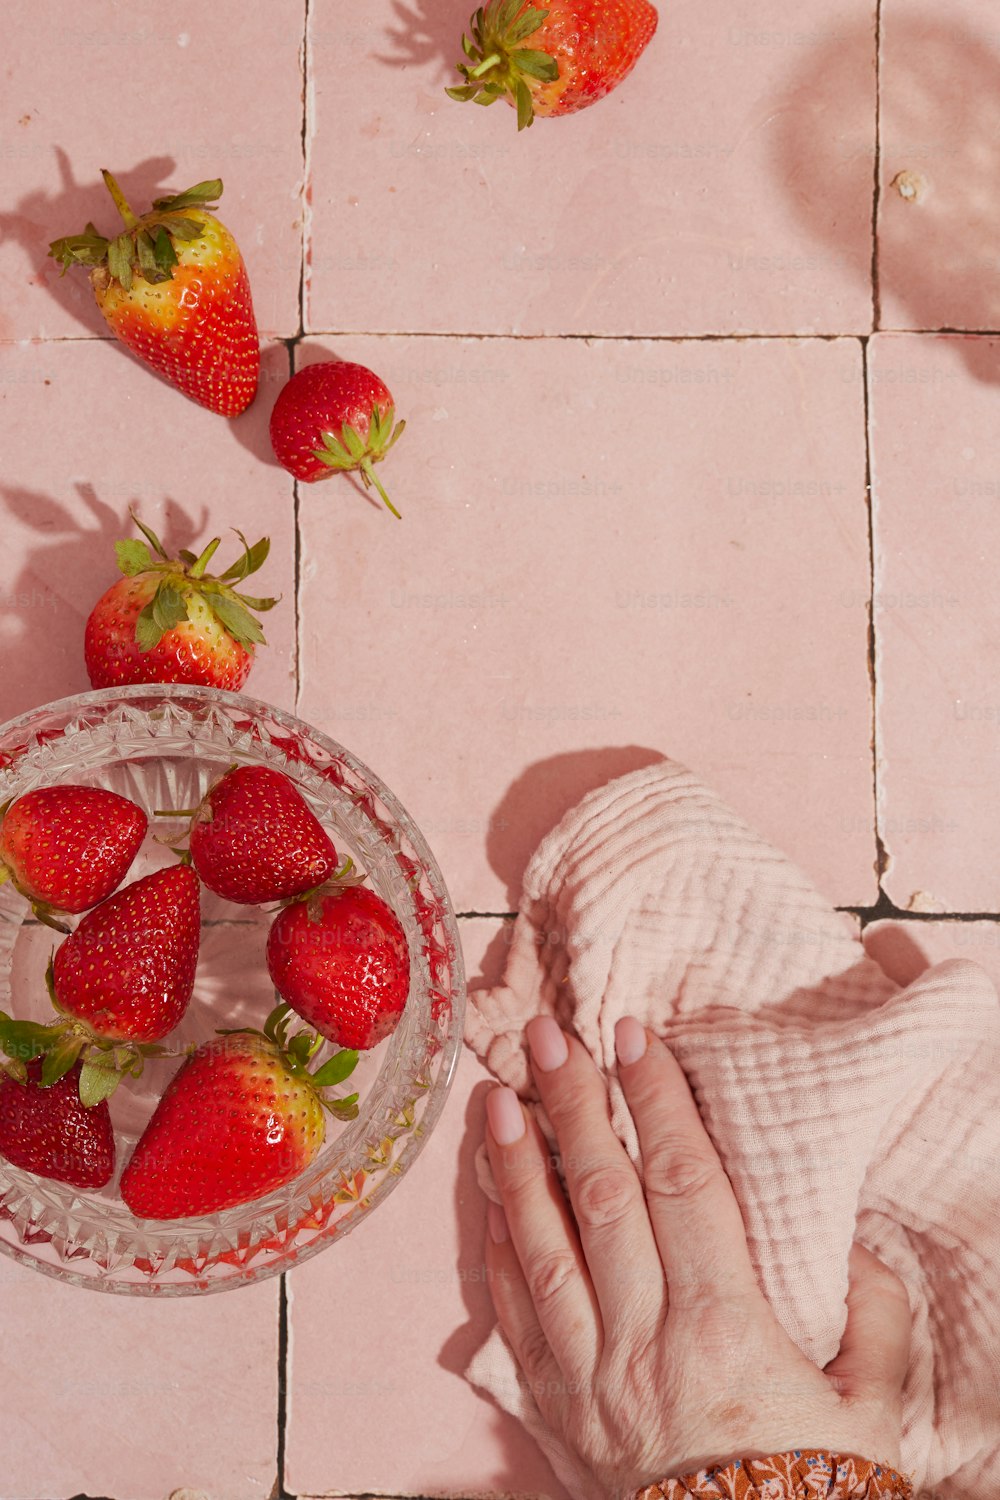 분홍색 타일 바닥에 딸기 한 그릇과 ��딸기 한 그릇